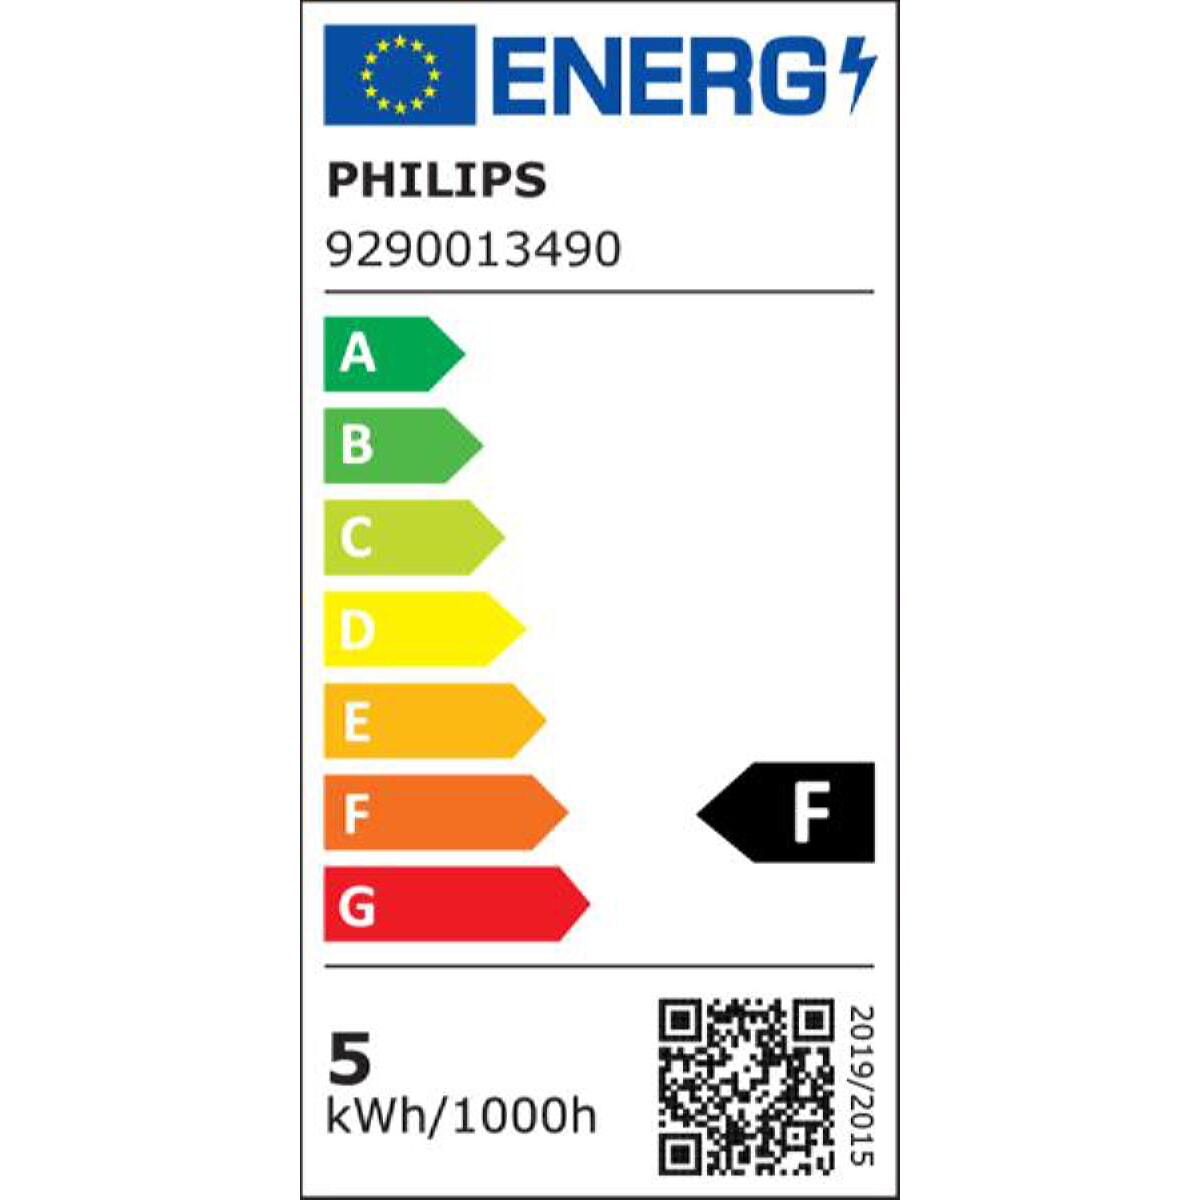 Philips LED-Leuchtmittel Master spot VLE D 4,9-50W GU10 940 36D